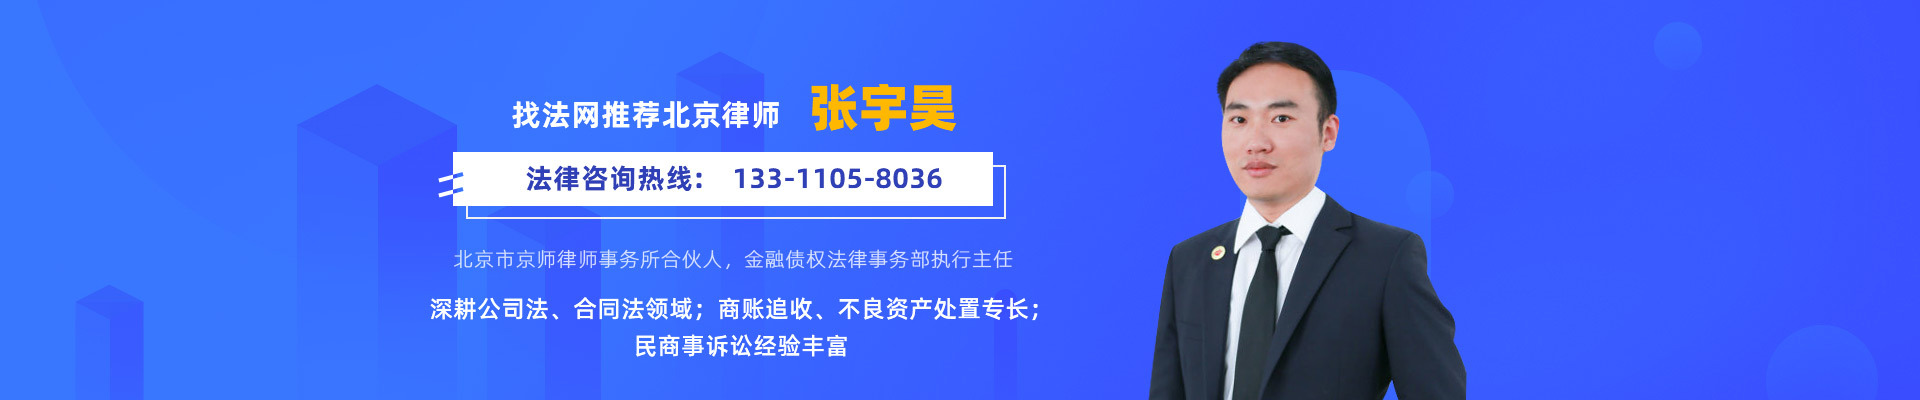 张宇昊的律师团队网站